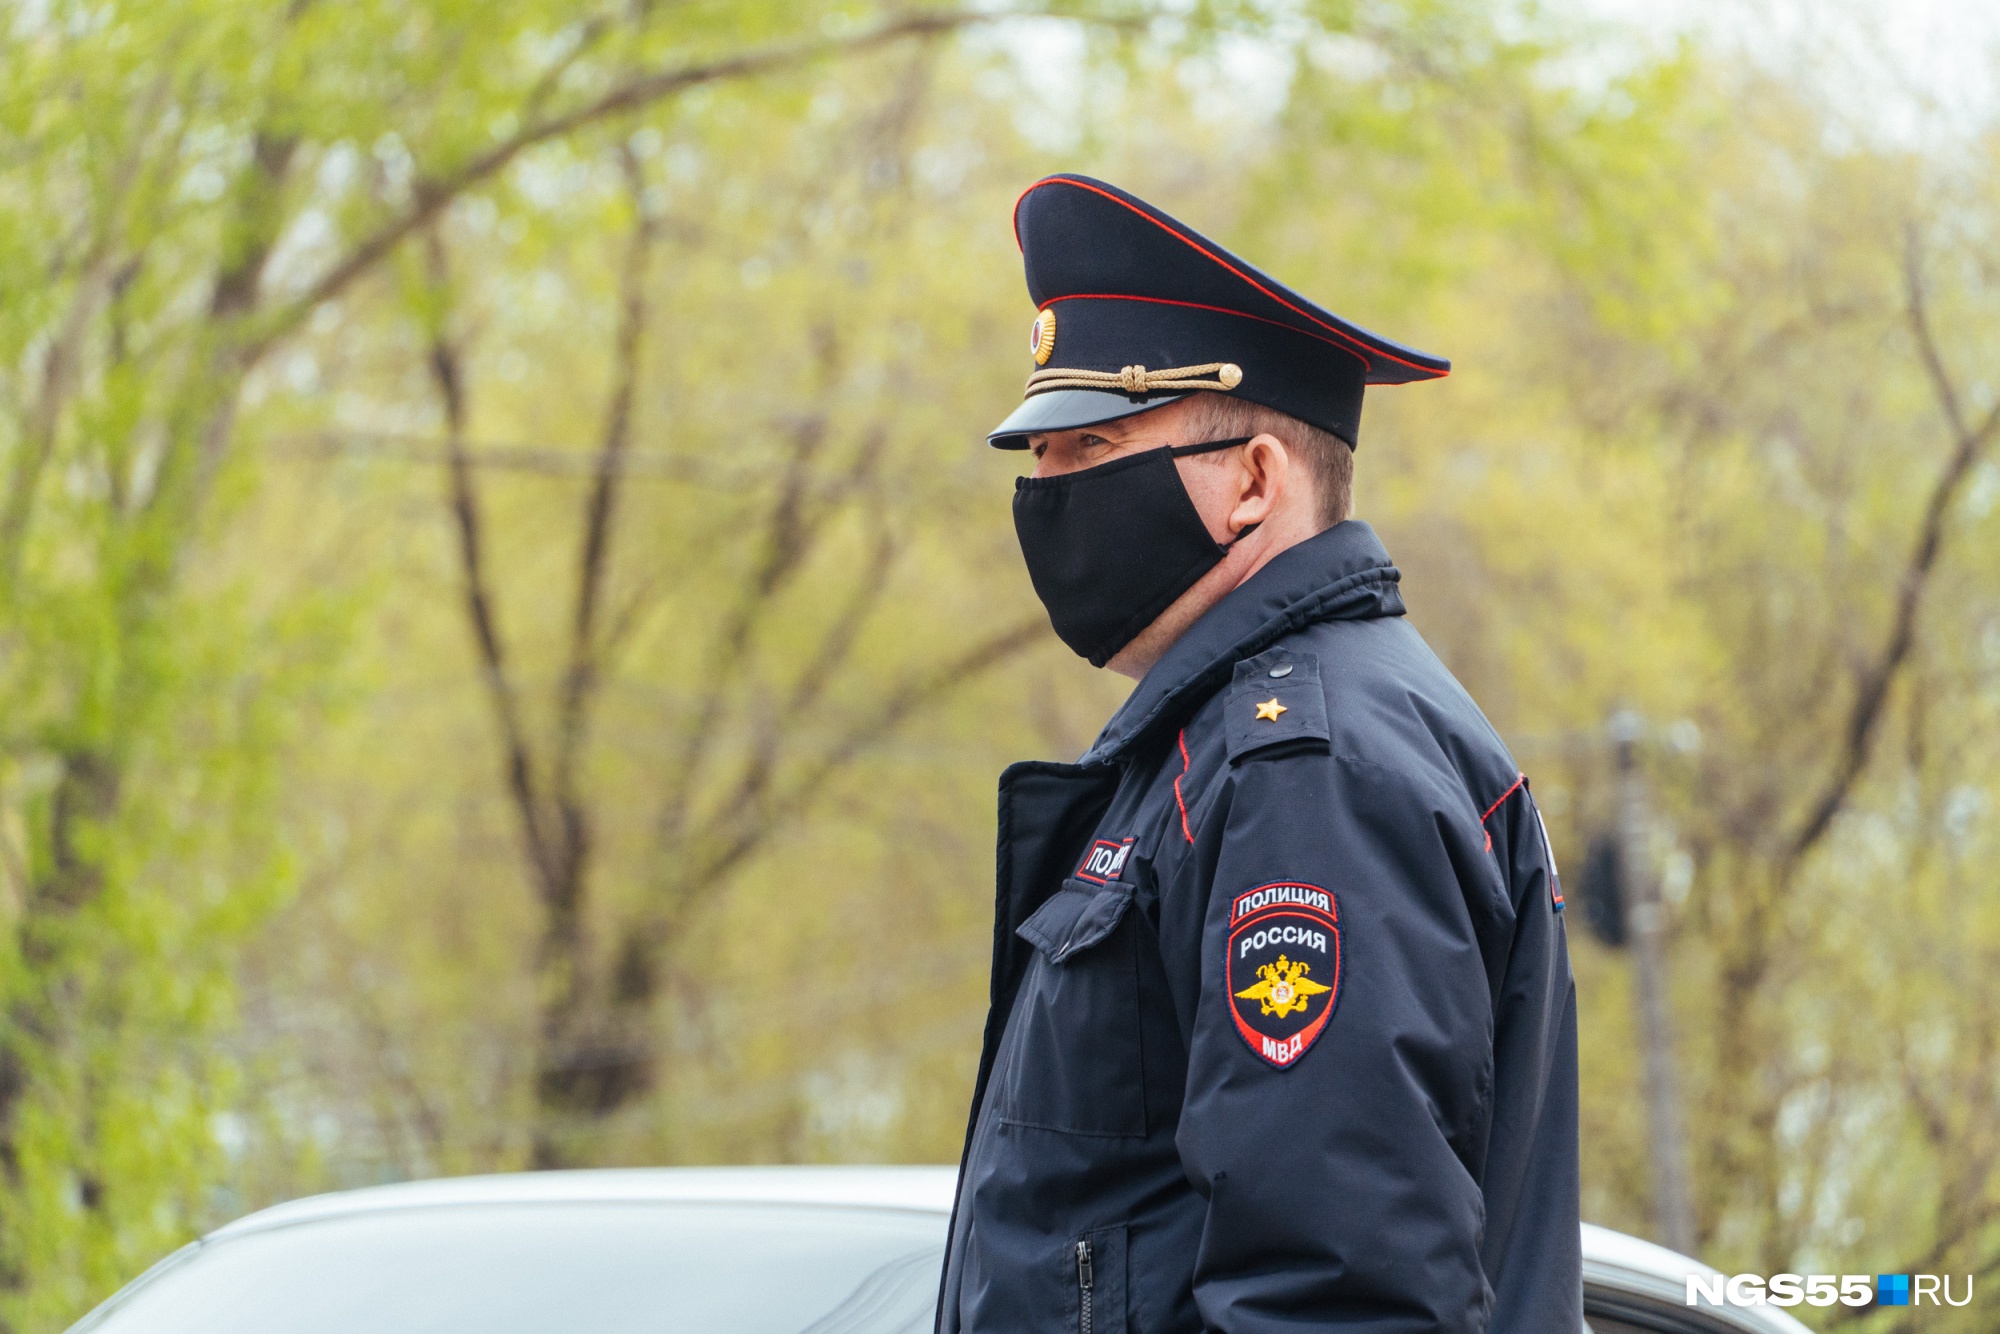 Похищение 10-летней девочки в Кемерово: в МВД рассказали, что на самом деле случилось